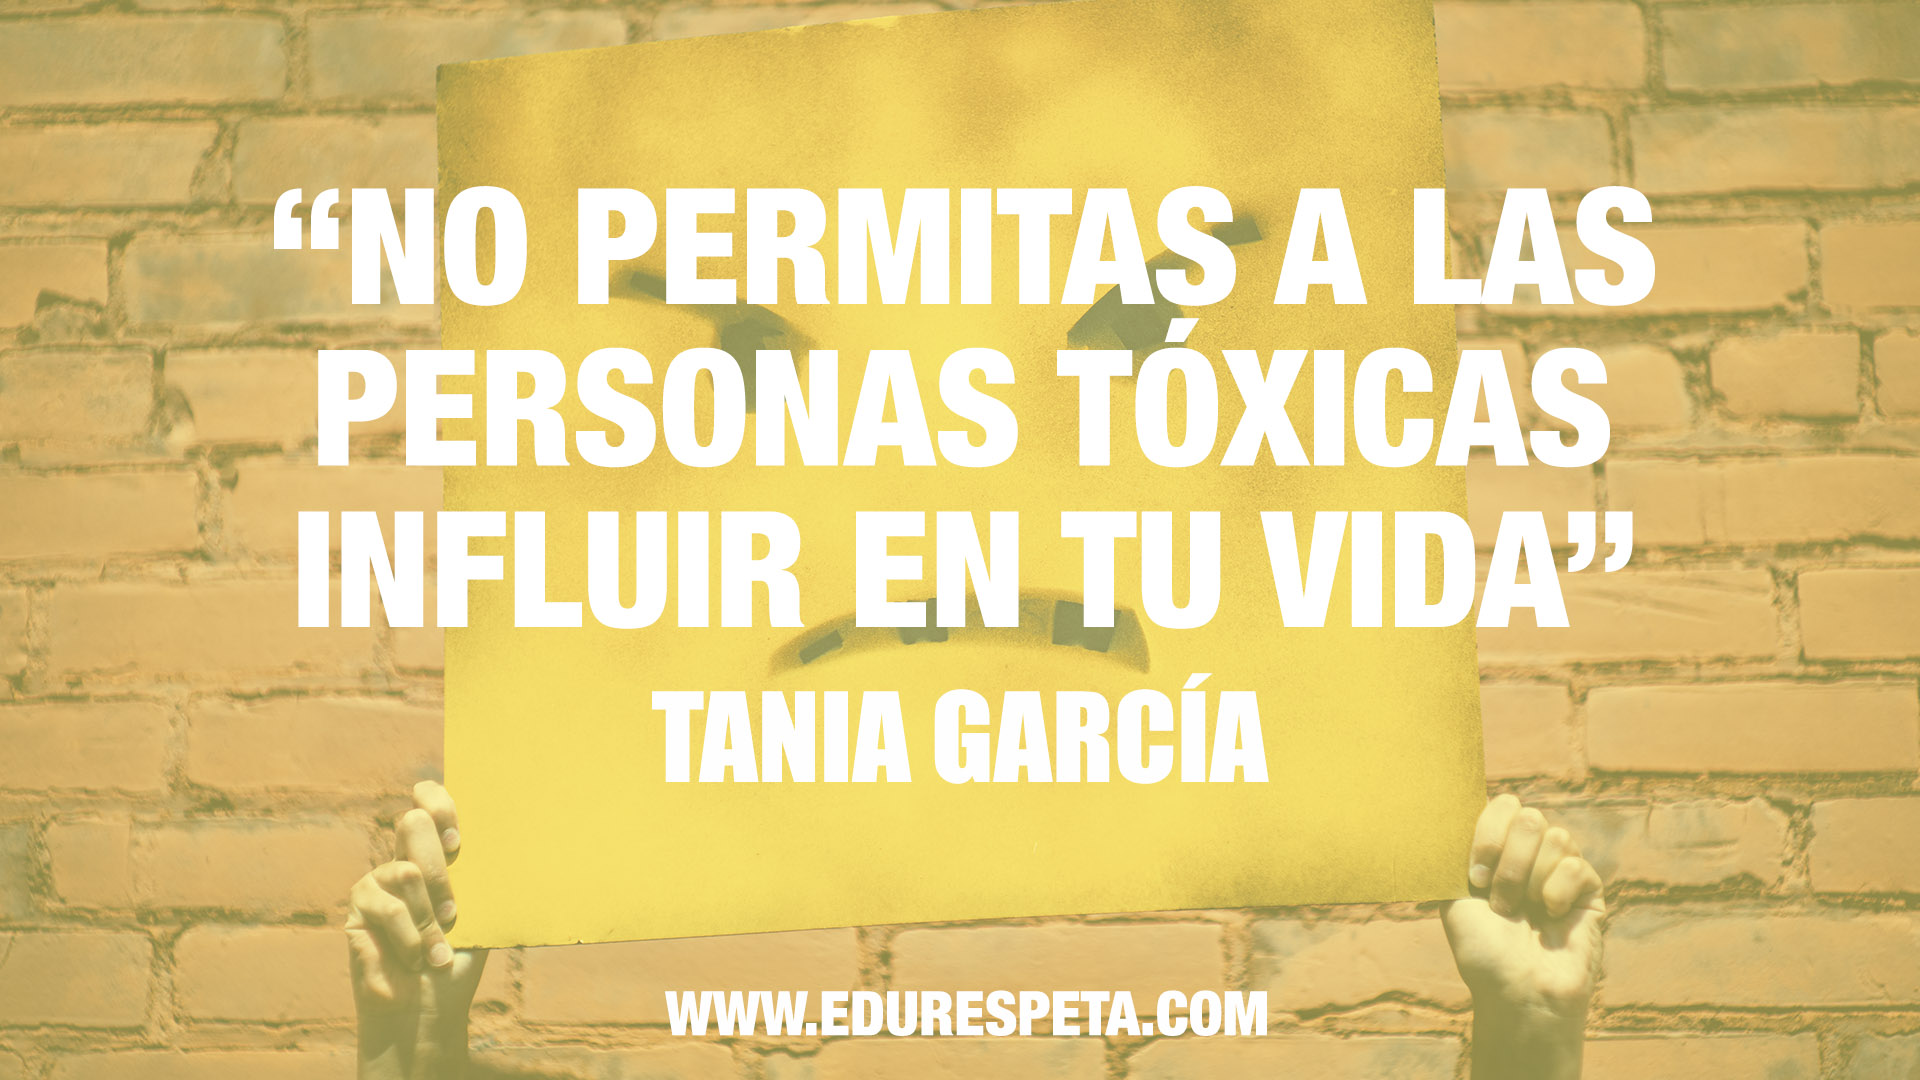 Personas tóxicas Edurespeta Tania García